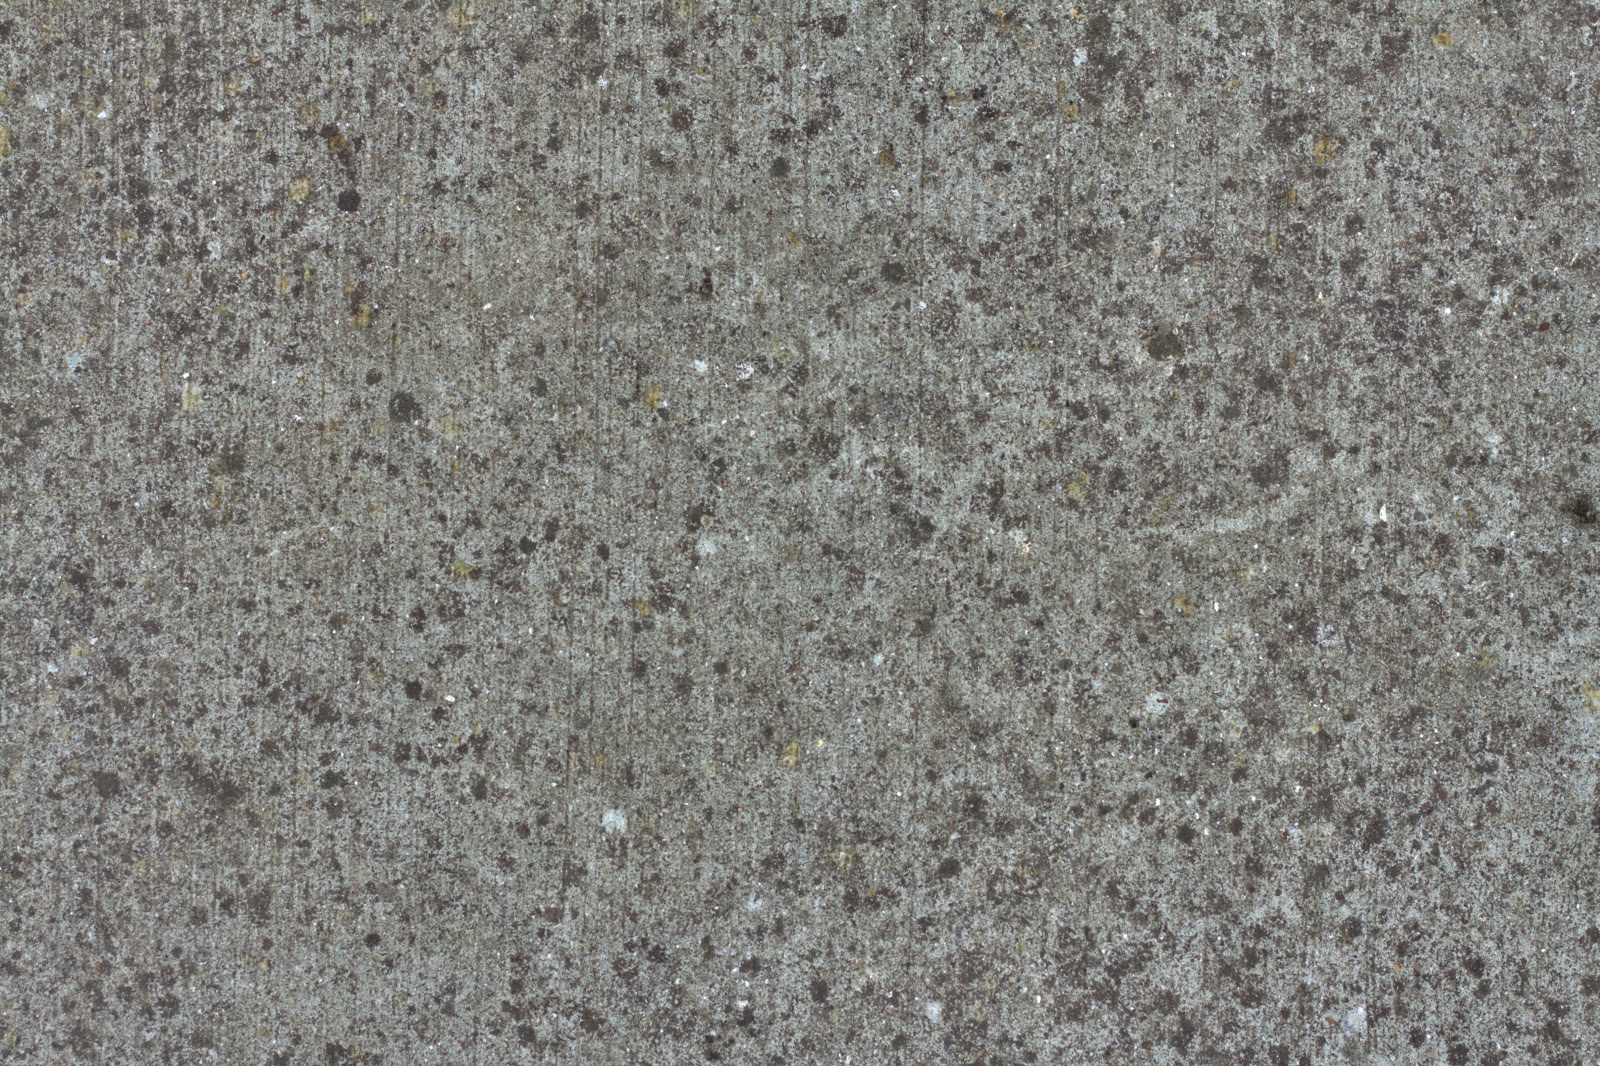 (Concrete 20) Beautiful granite concrete stone texture 4770x3178